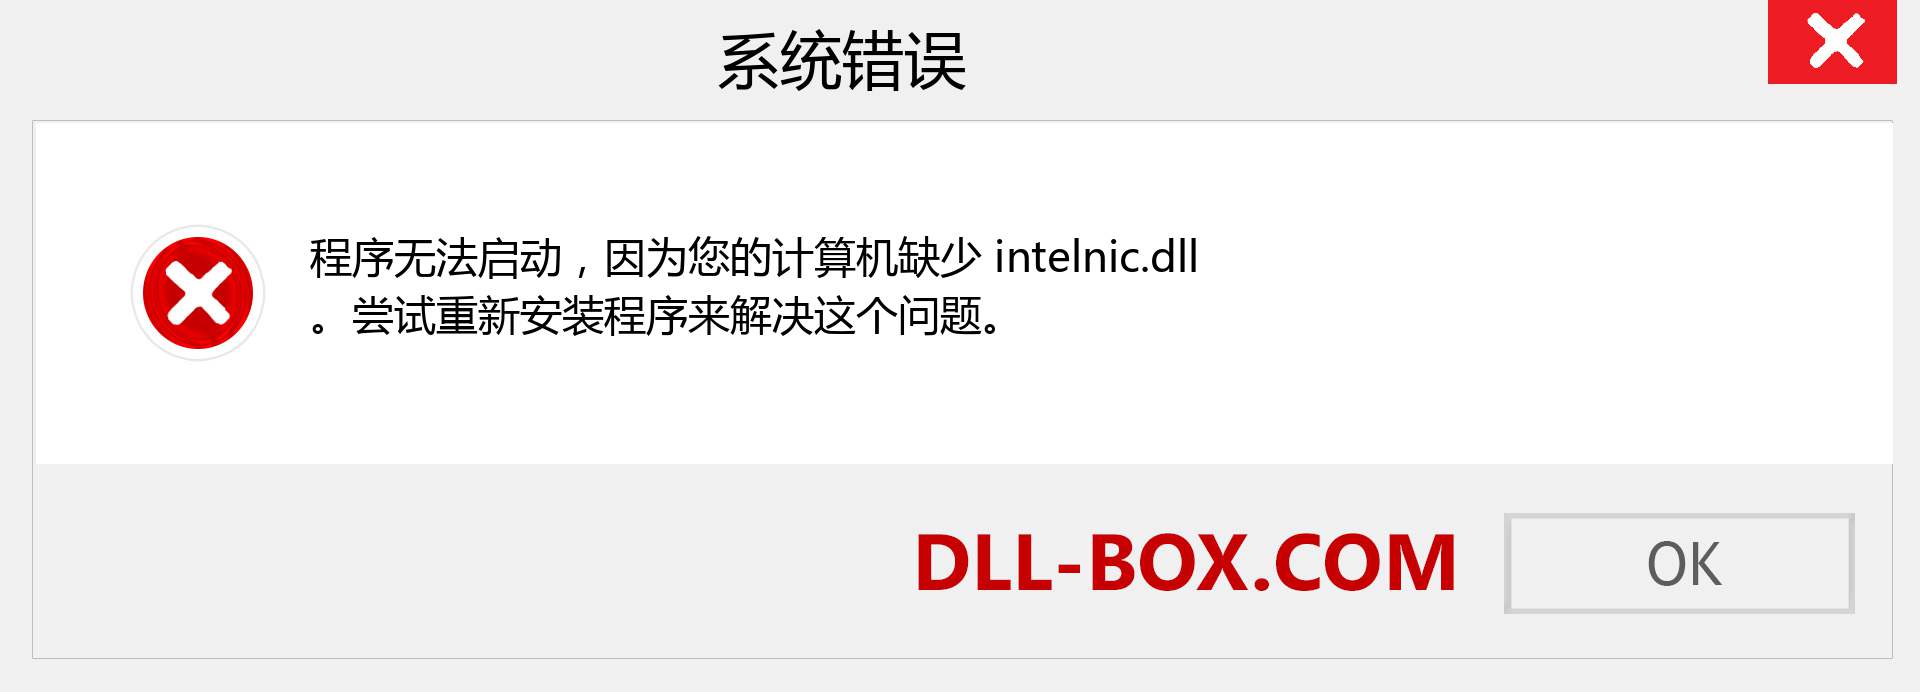 intelnic.dll 文件丢失？。 适用于 Windows 7、8、10 的下载 - 修复 Windows、照片、图像上的 intelnic dll 丢失错误